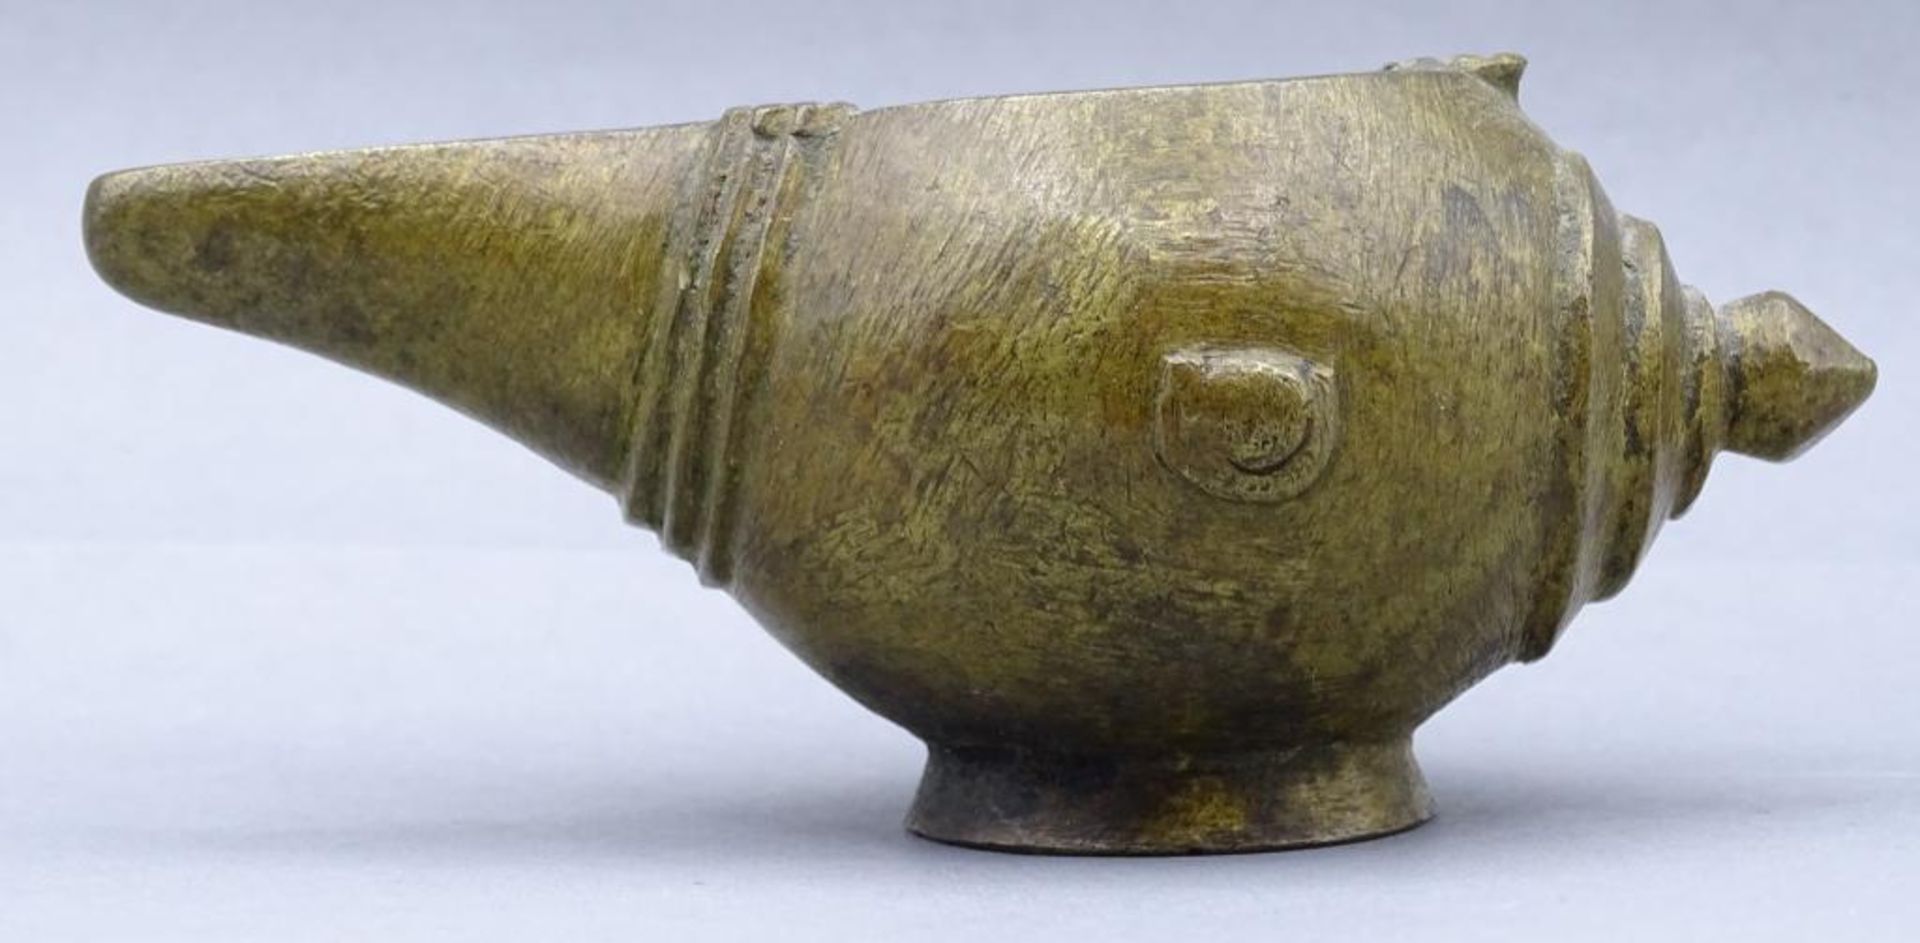 Bronze Öllampe, wohl Indonesien, 17/18.Jhd, mit Karte, gekauft bei Lempertz, 196- - -22.61 % buyer's